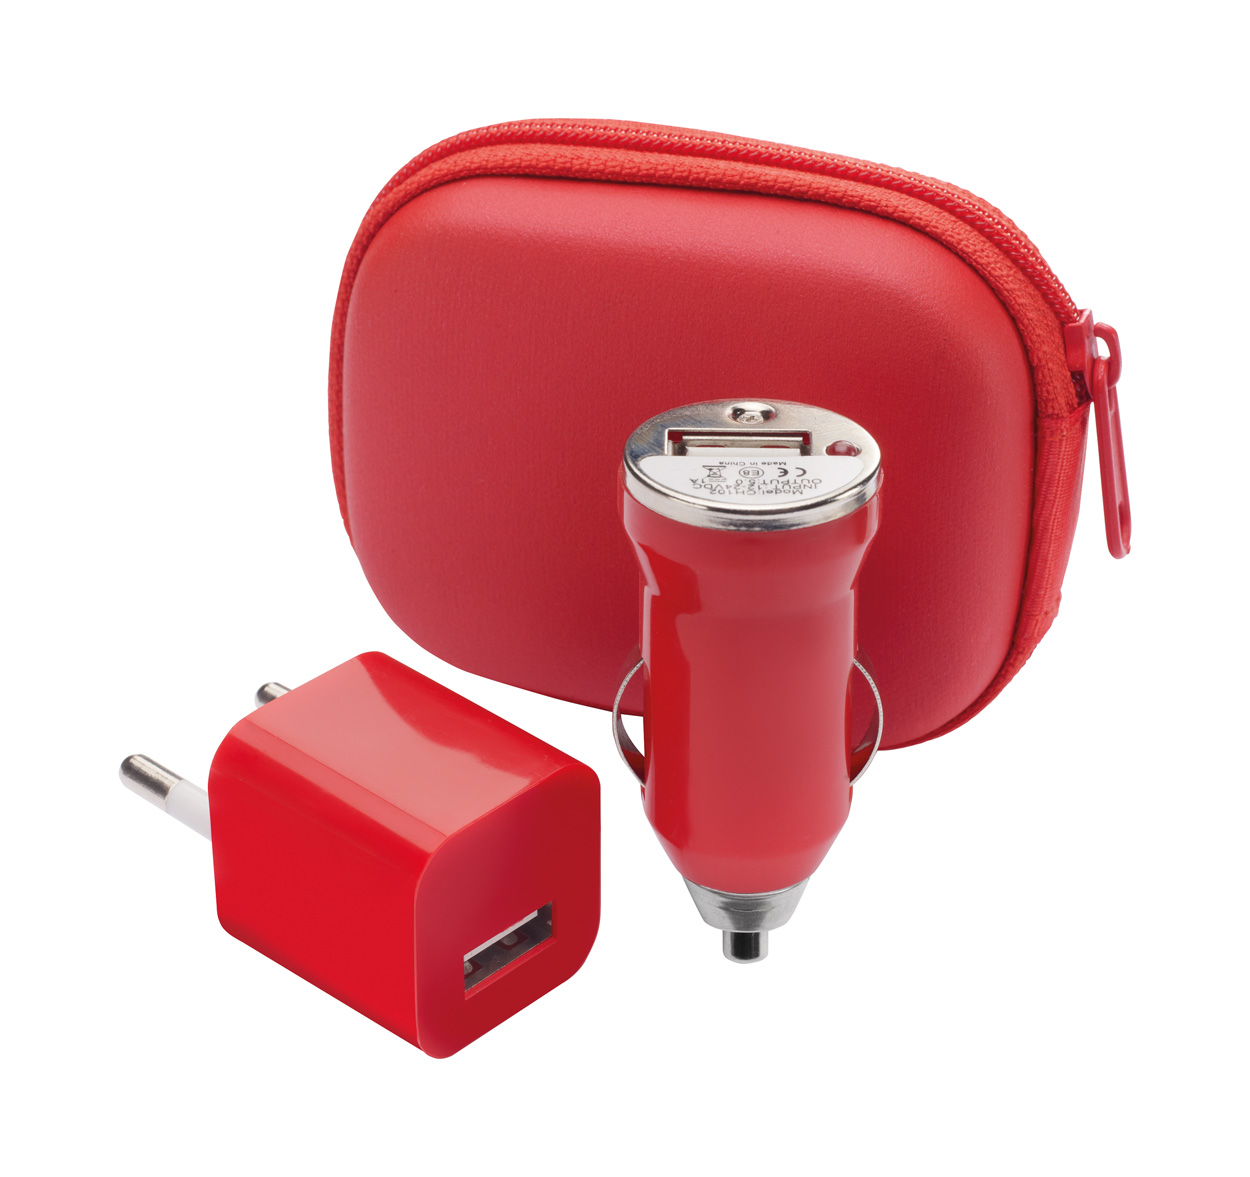 Promo Canox set - USB punjač i USB auto punjač - u torbici sa max izlazom od 1000 mA, crvene boje